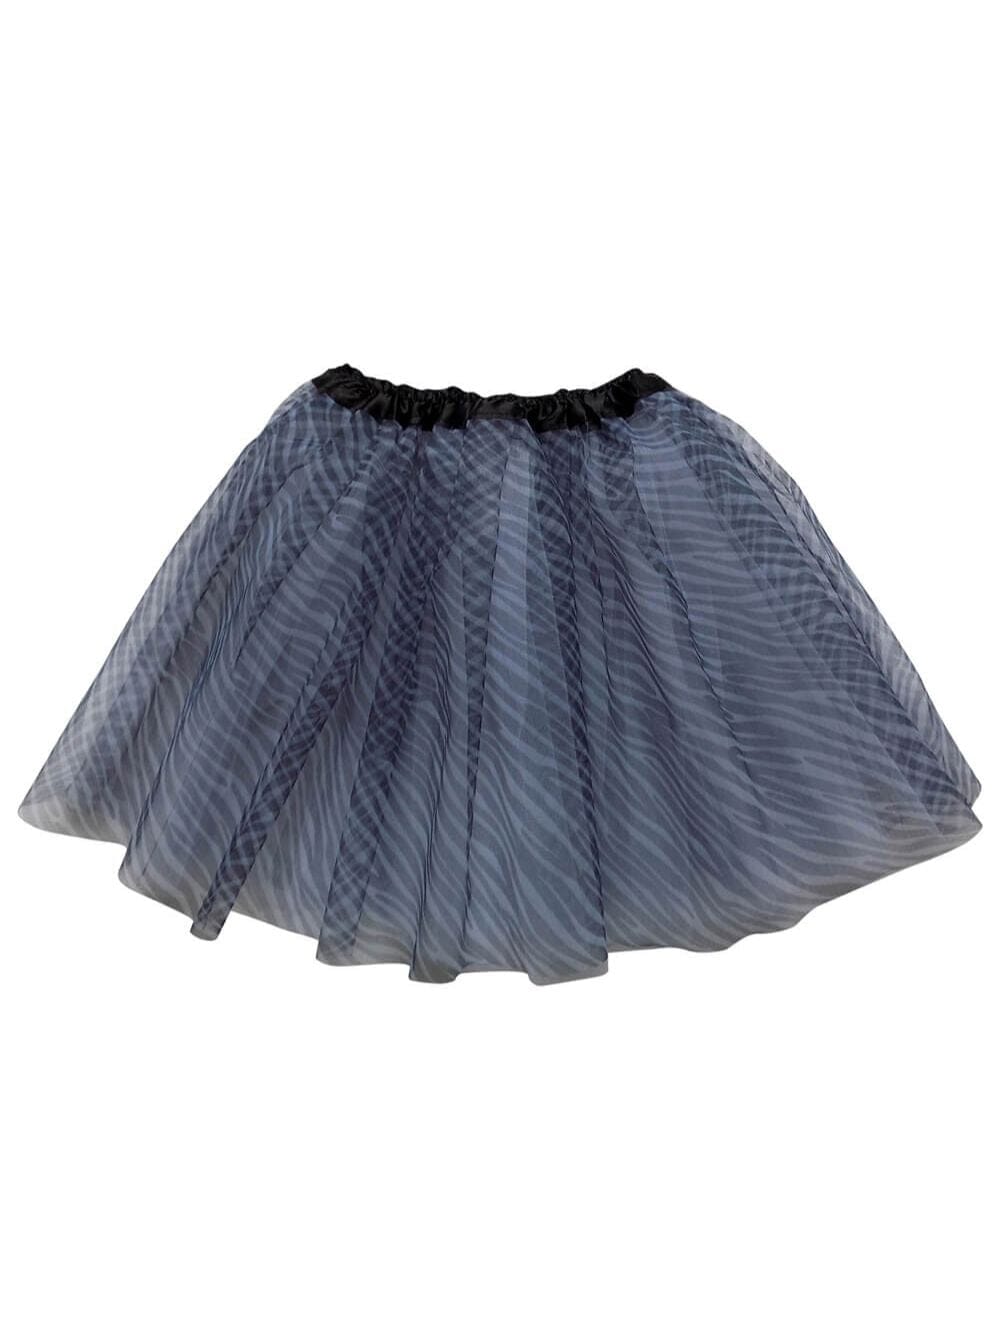 Zebra Black & White Adult Tutu Skirt - Women's Size 3-Layer Basic Ballet Costume Dance Tutus - Sydney So Sweet